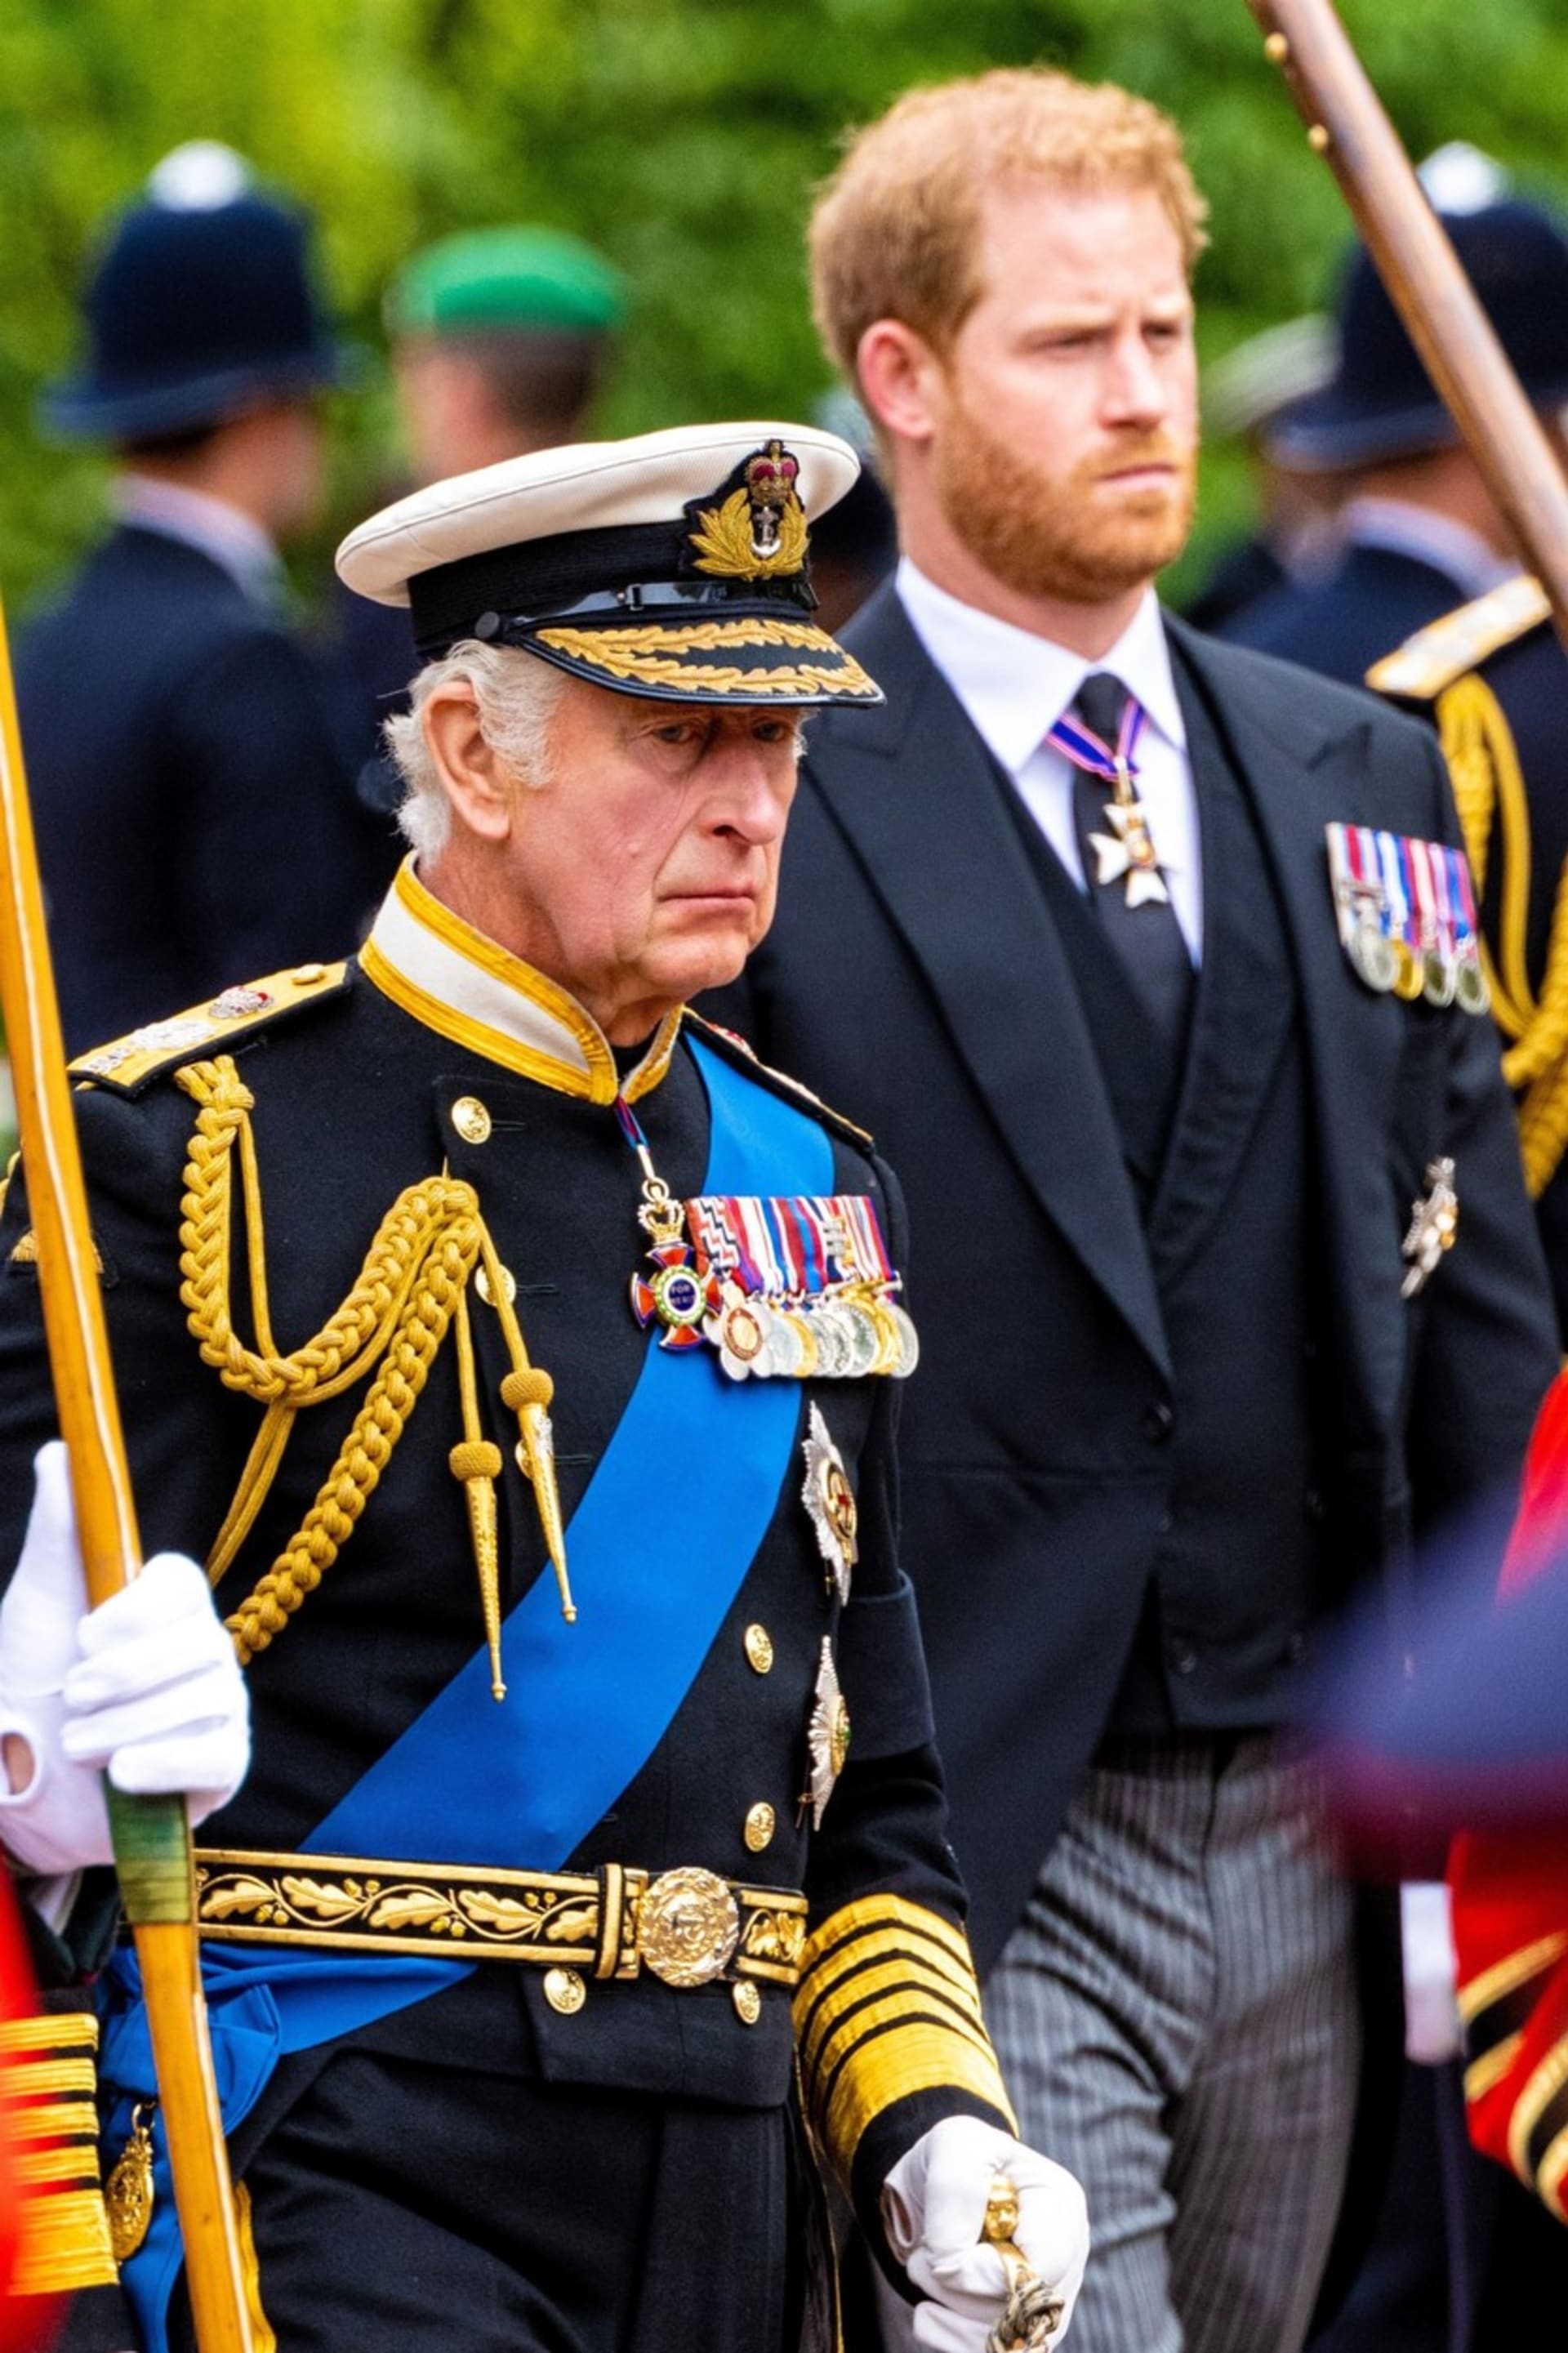 Britský král Karel III. bude hospitalizován kvůli léčbě nezhoubného zvětšení prostaty.